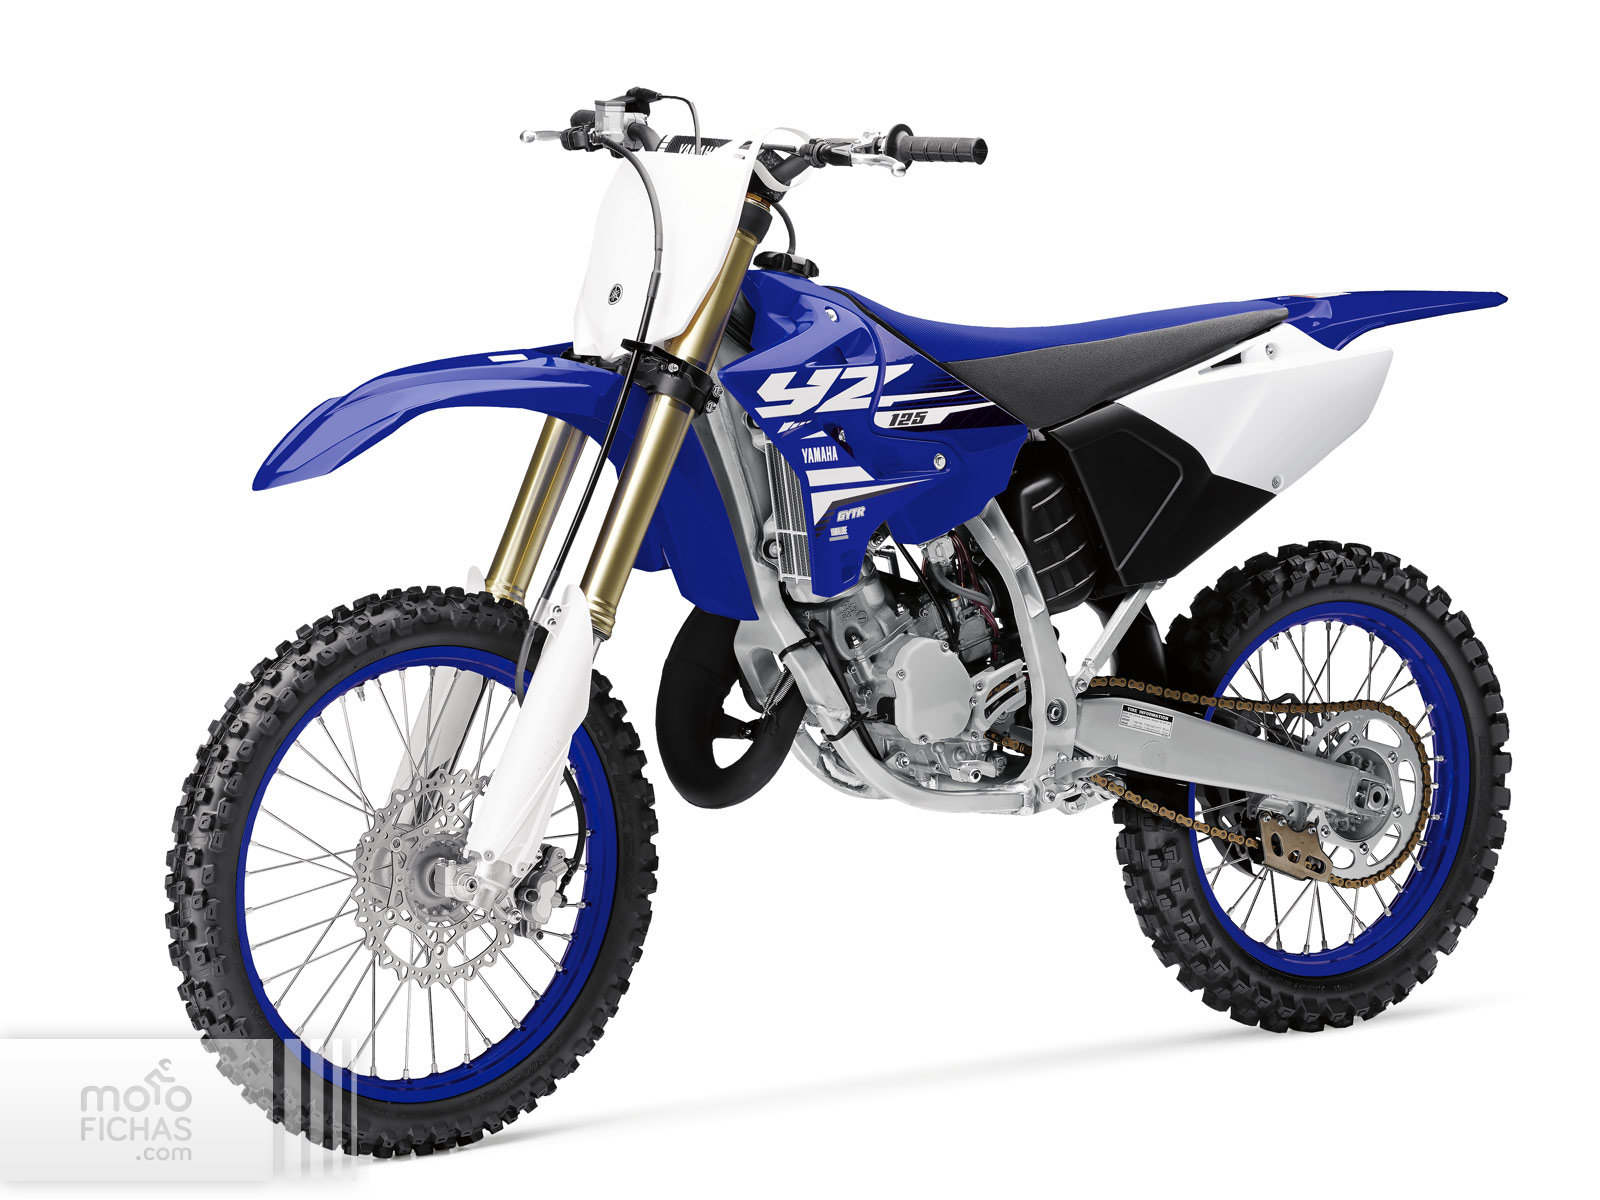 Yamaha XSR900 2018-2019 precio ficha opiniones y ofertas en 2020 | Yamaha, Motos yamaha, Garage 